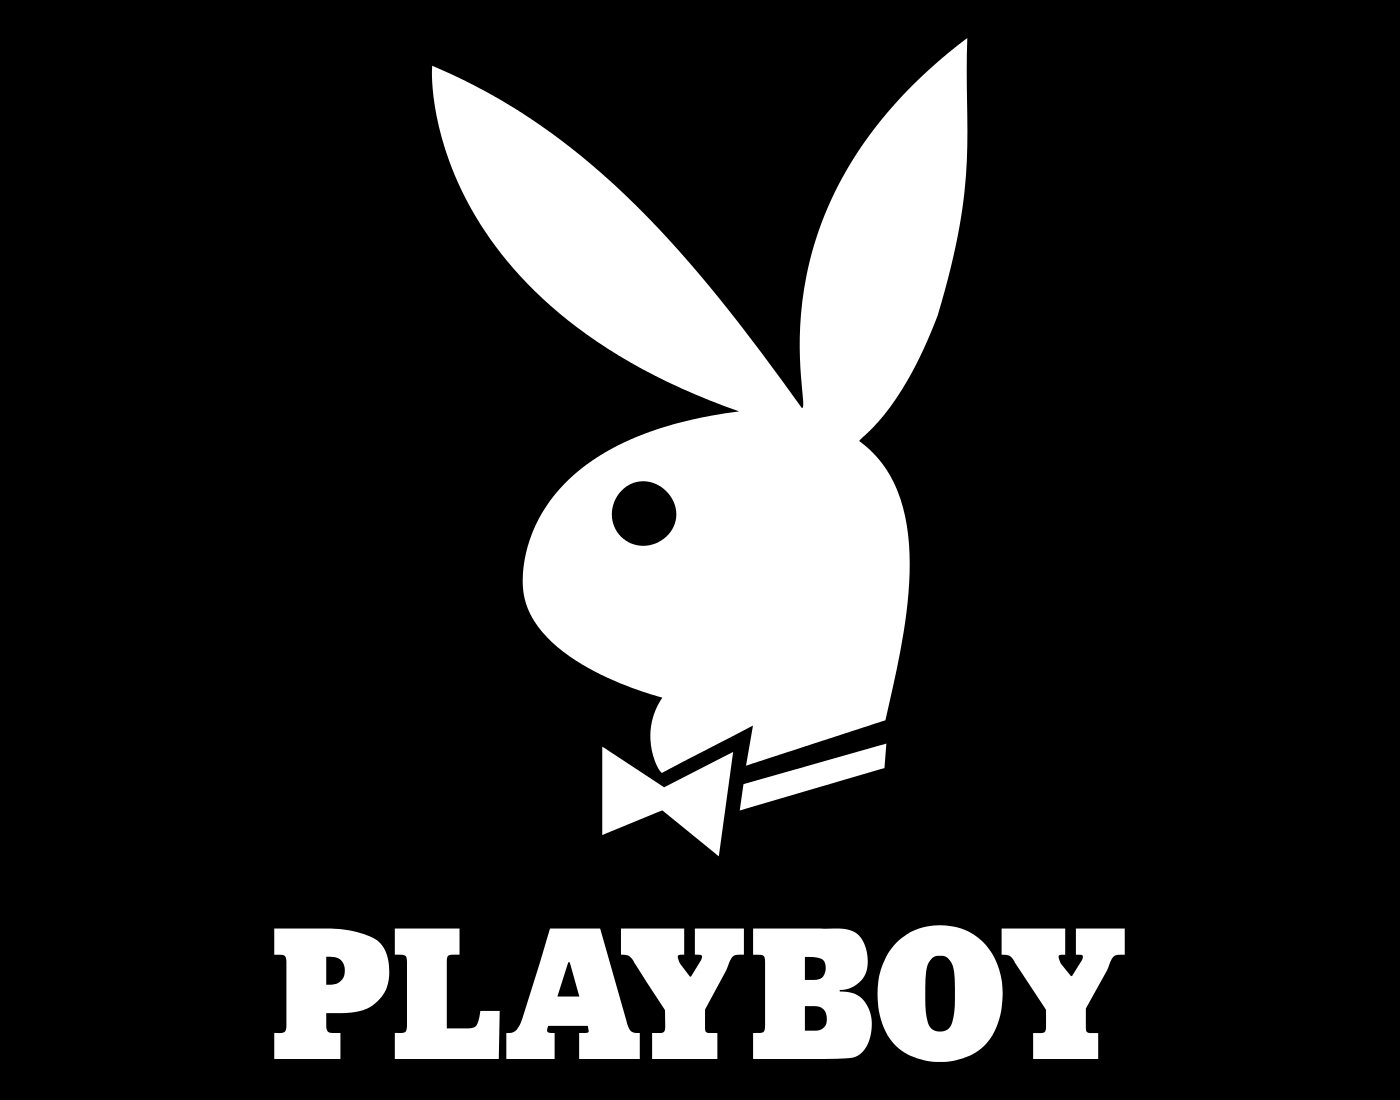 Playboy symbol.